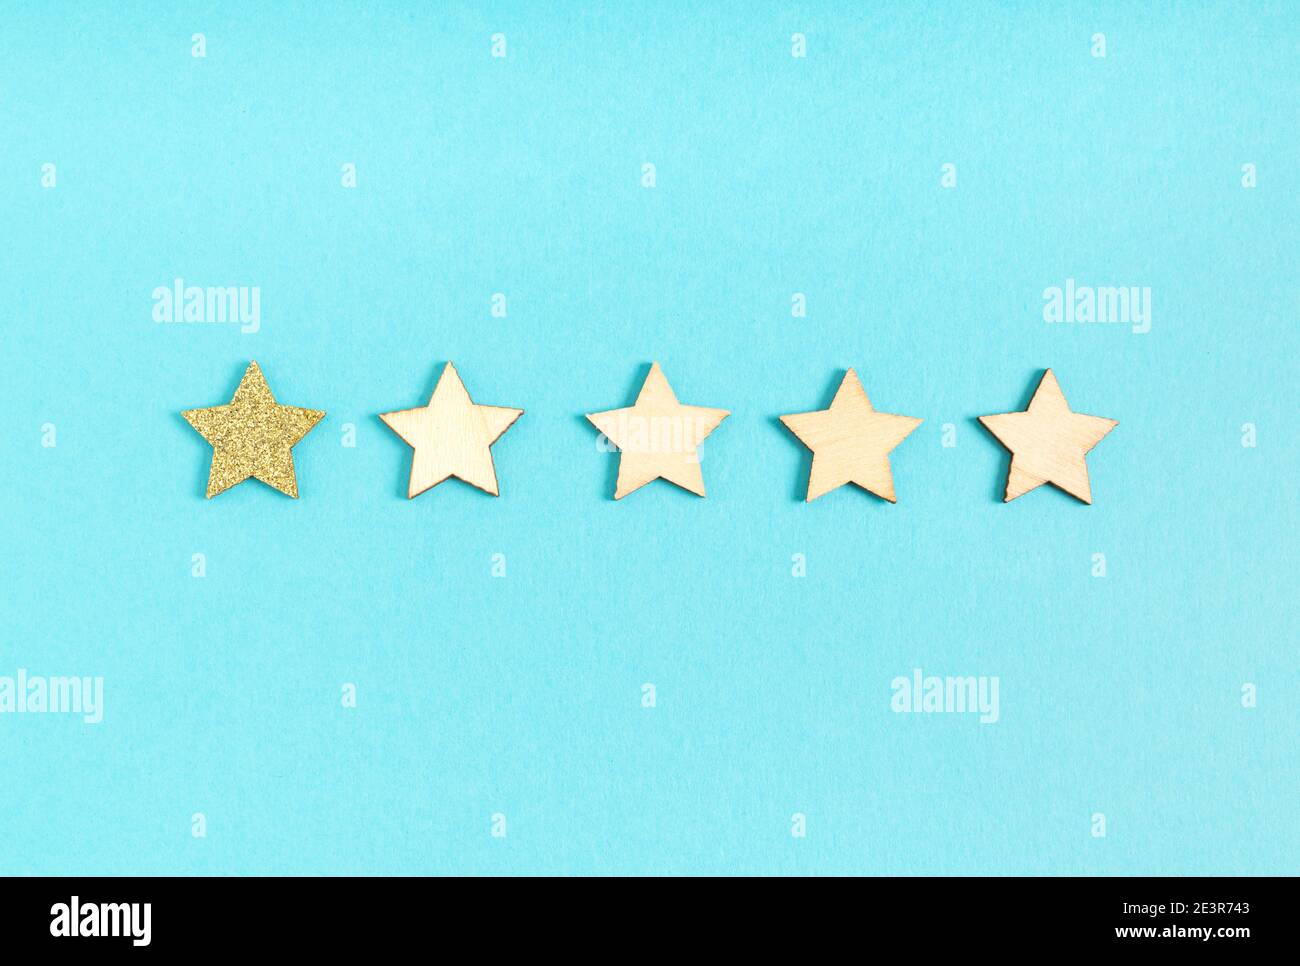 Una estrella, una estrella dorada brillante y cuatro estrellas de madera sobre un fondo azul Foto de stock